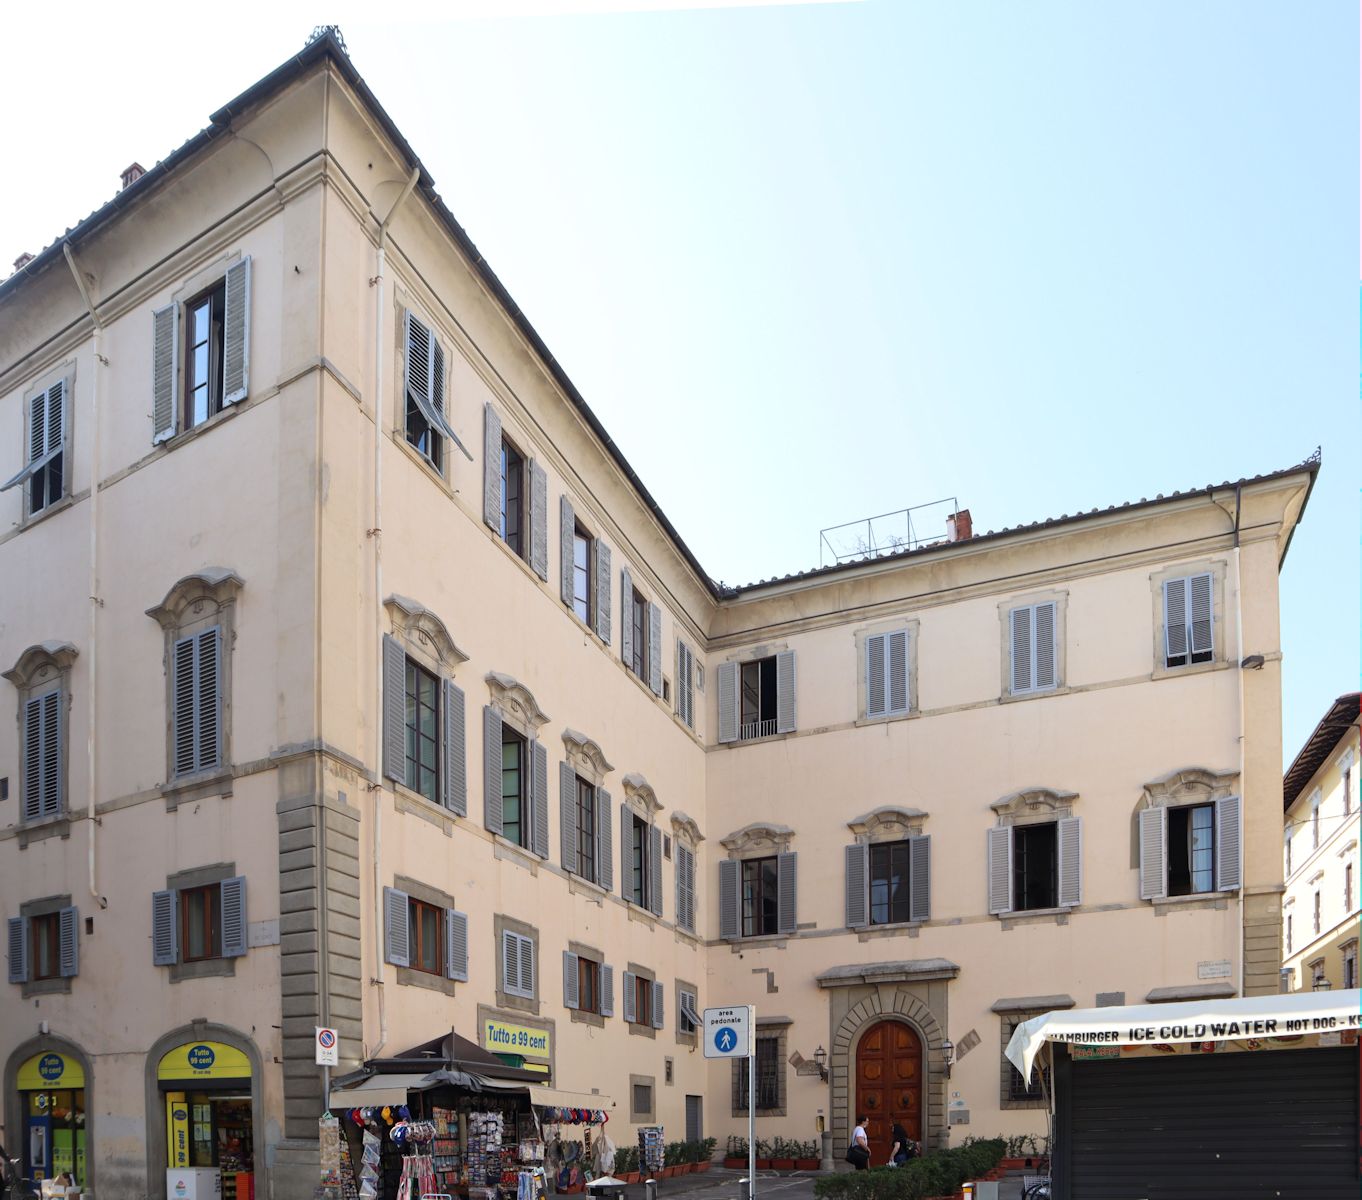 Palazzo Aldobrandini in Florenz